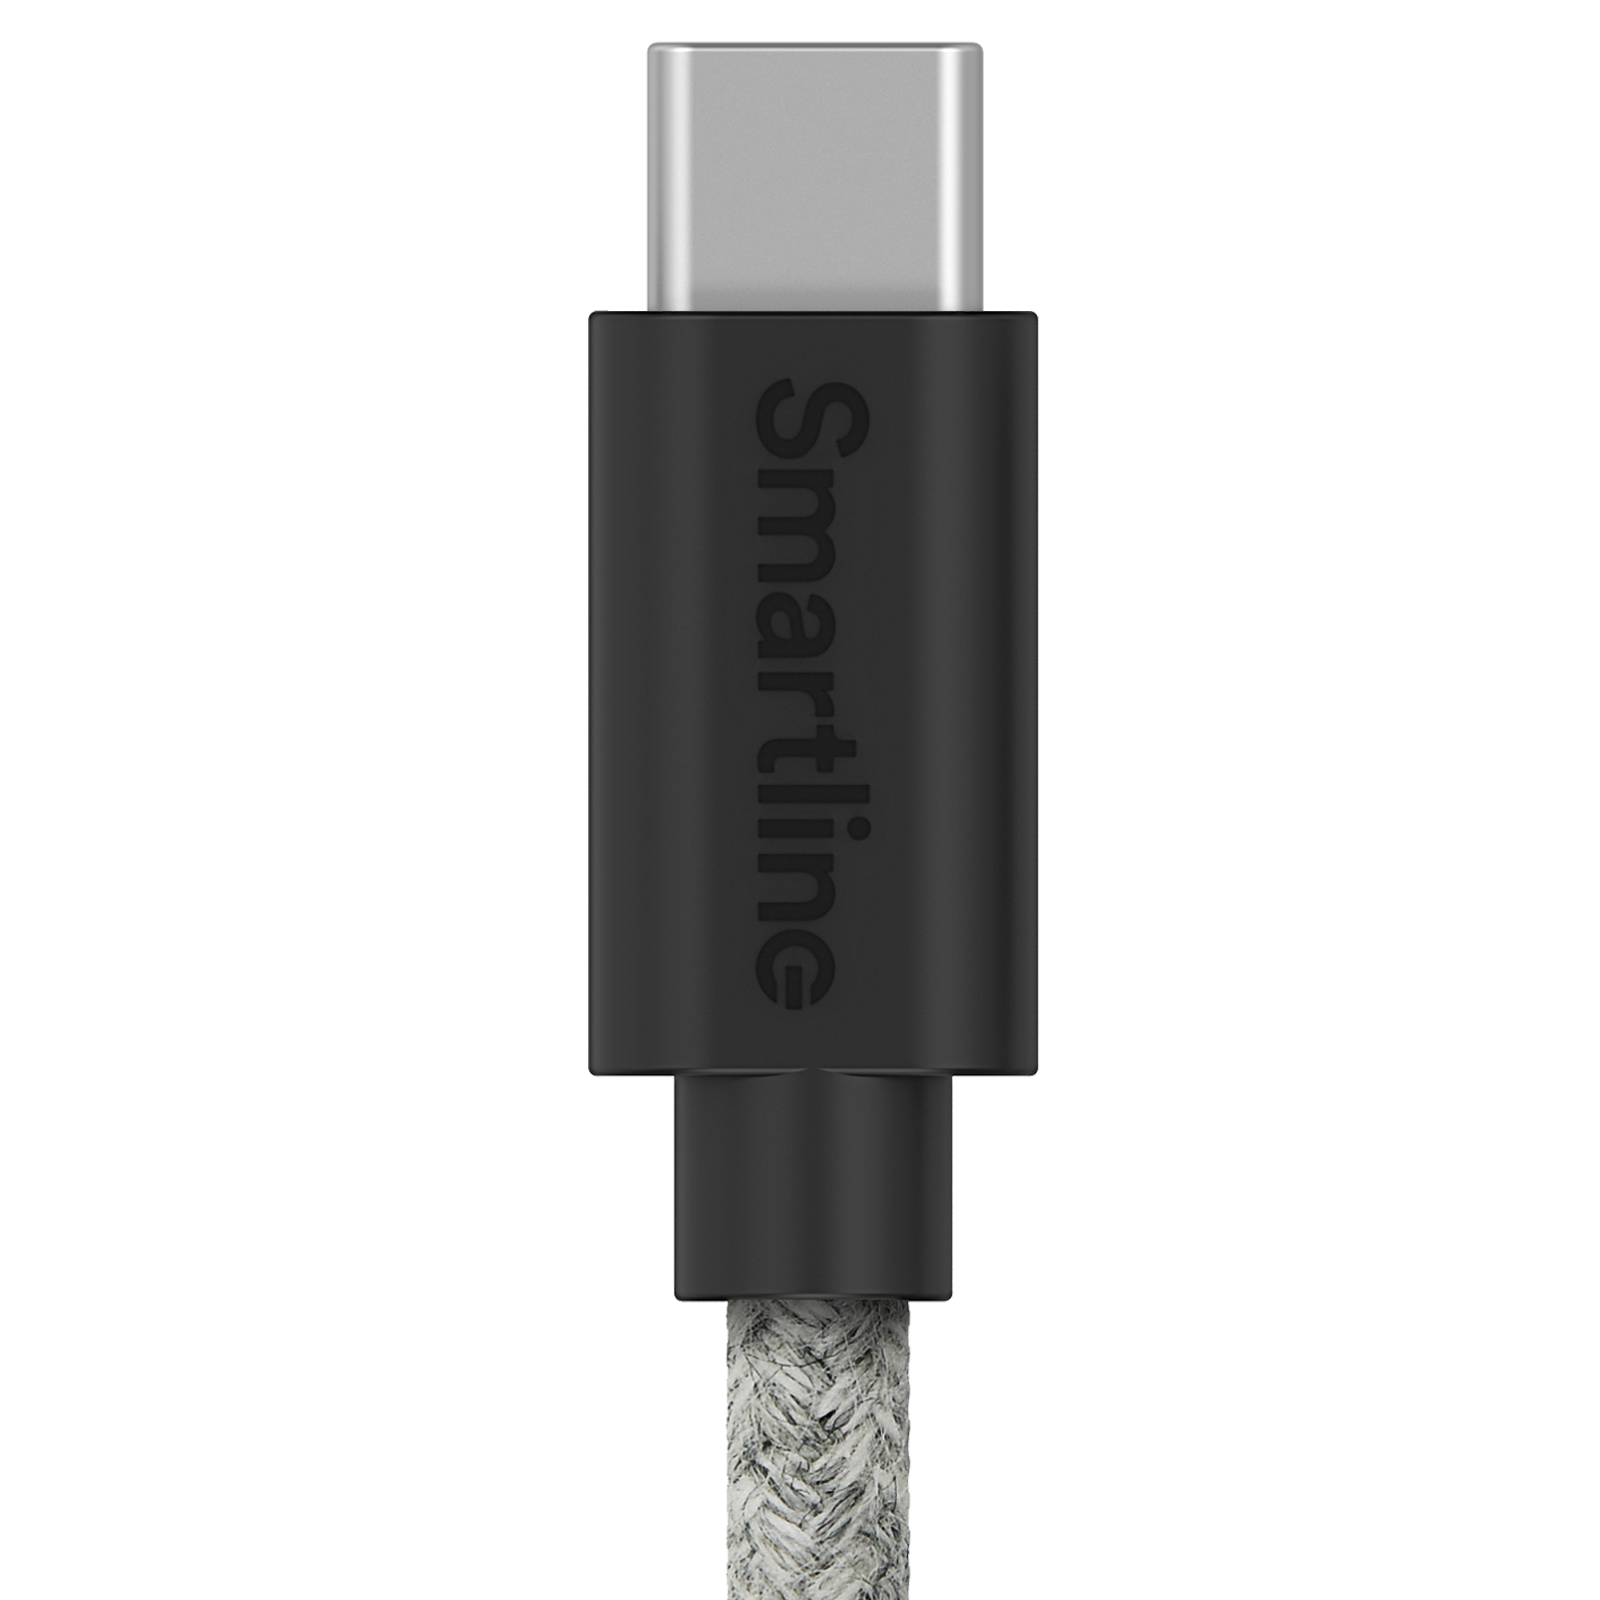 Fuzzy Laddningskabel 2m USB-C, grå